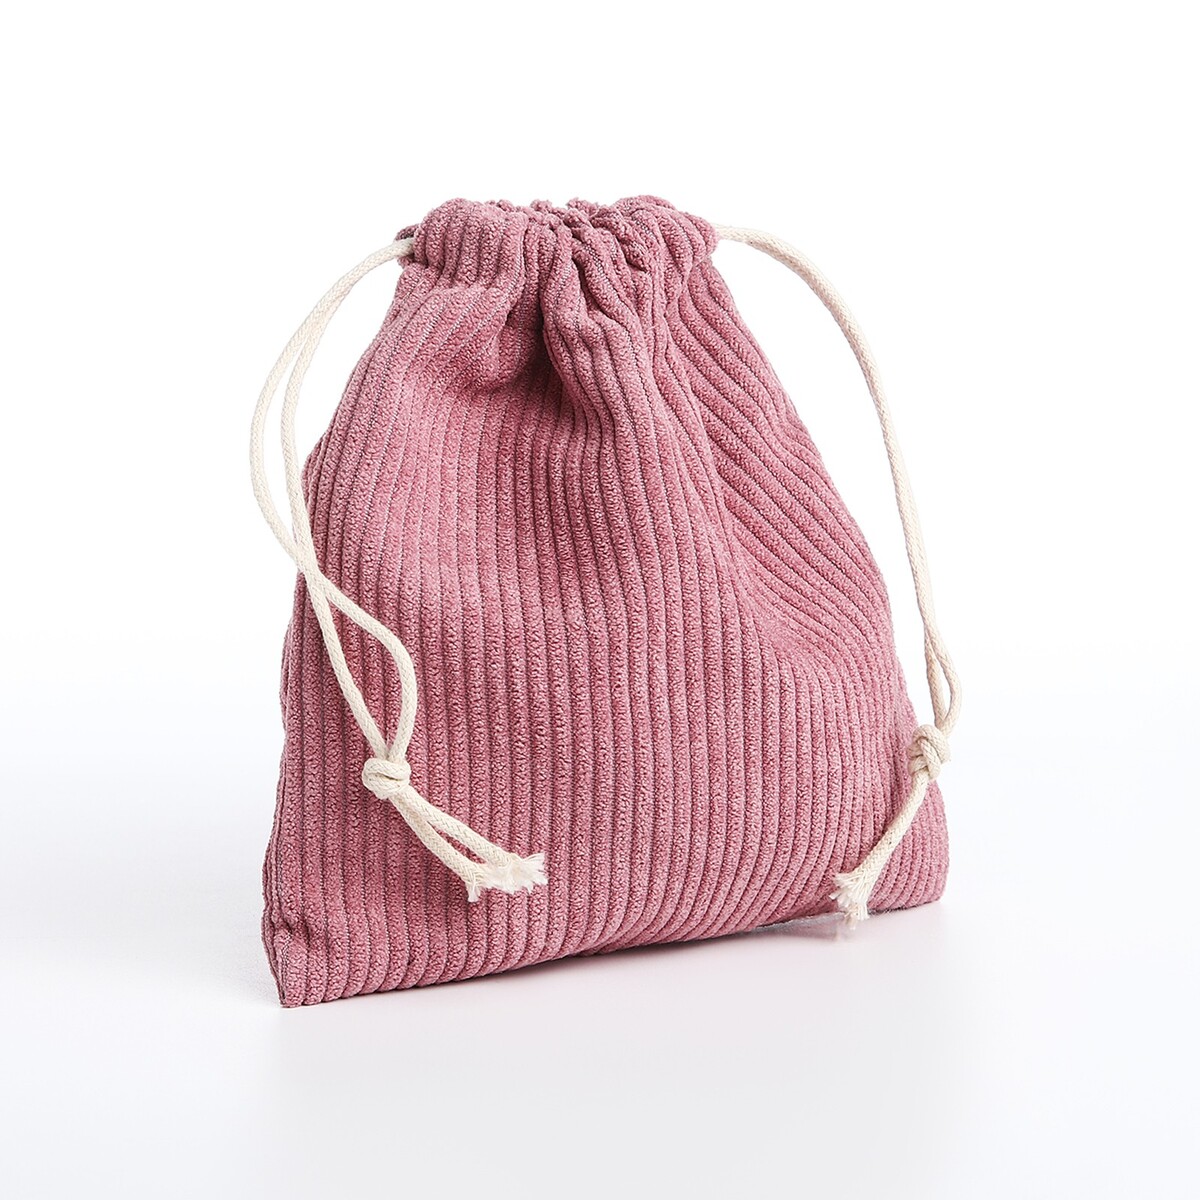 Косметичка - мешок с завязками, цвет сиренево-розовый косметичка мешок с завязками розовый